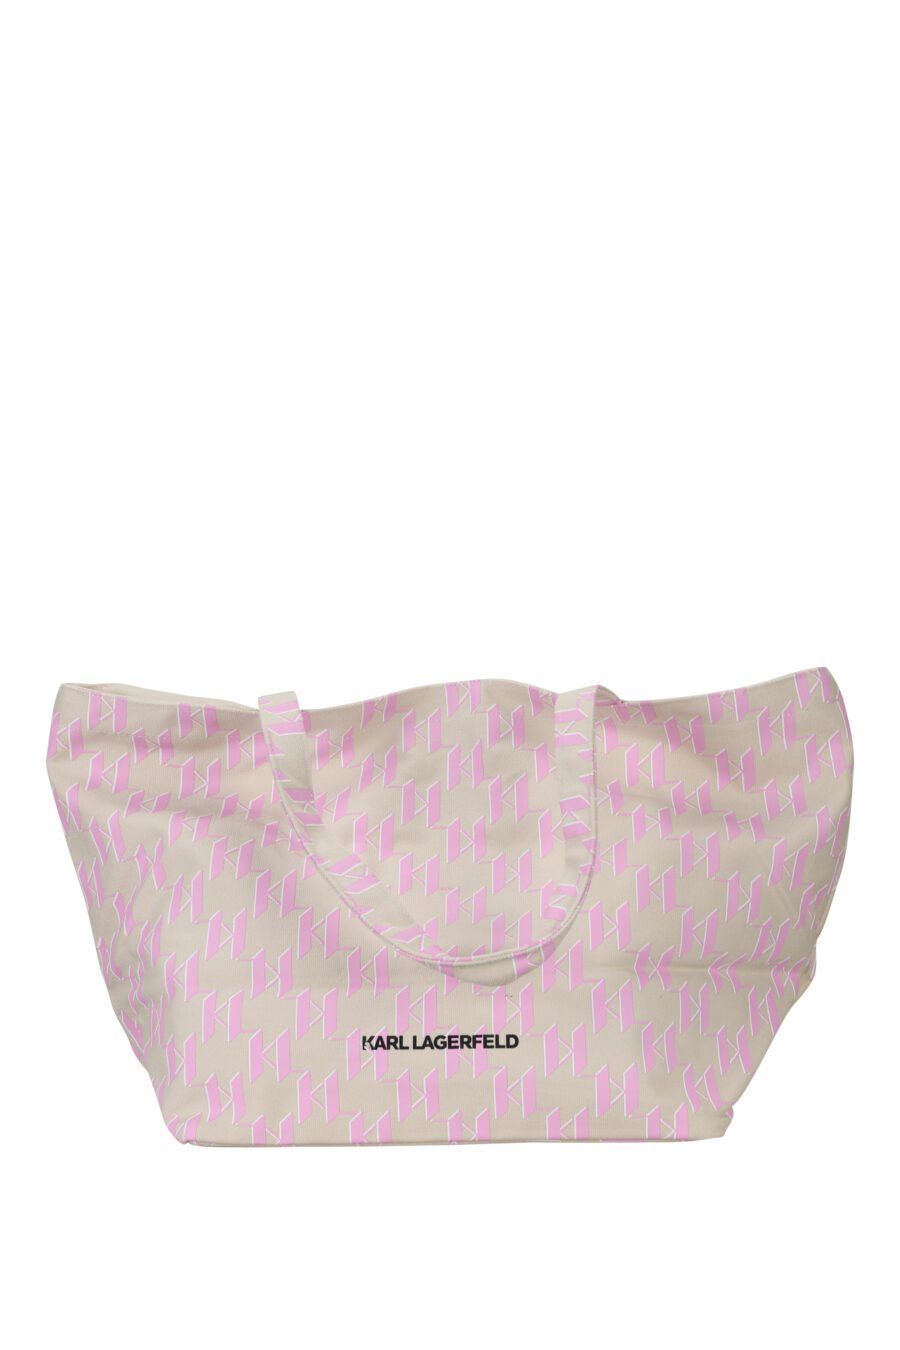 Tote bag beige con monogram rosa y maxilogo "choupette" - 8720744818137 2